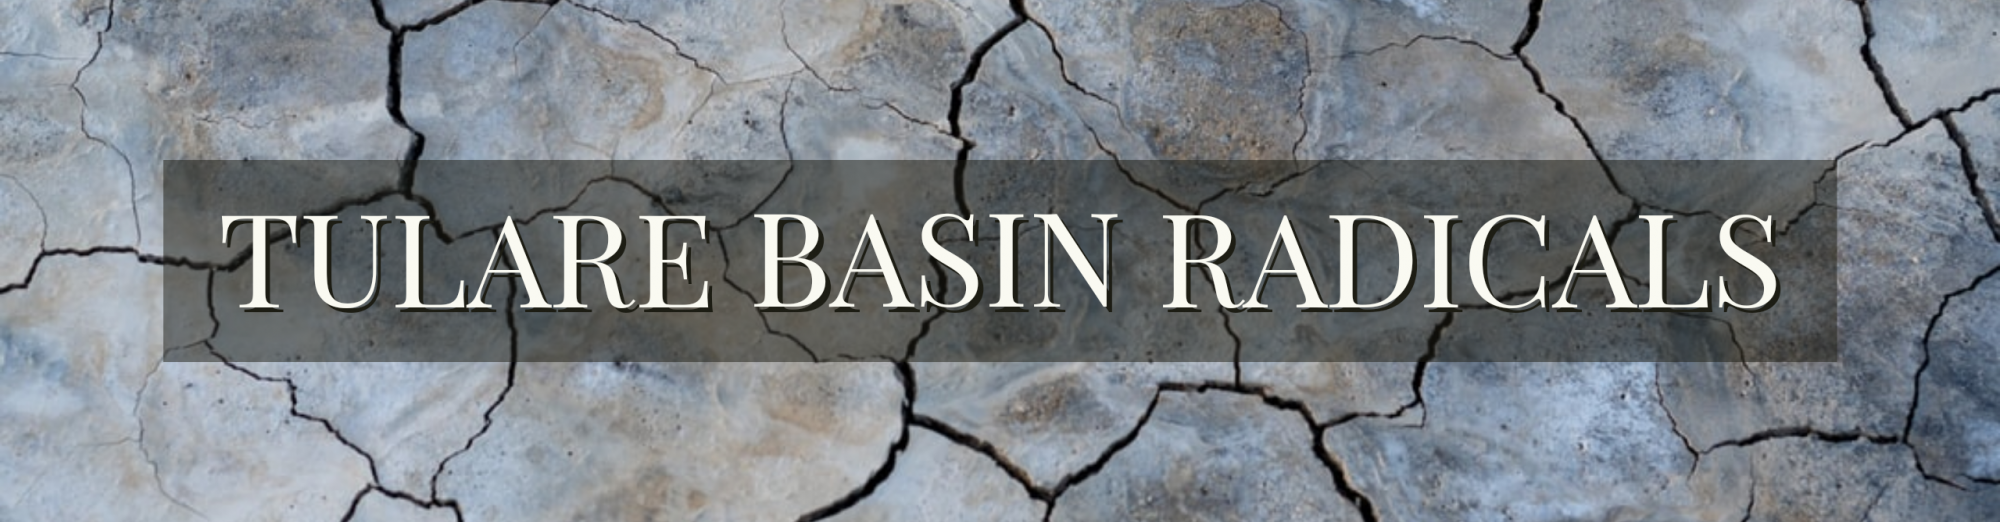 Tulare Basin Radicals